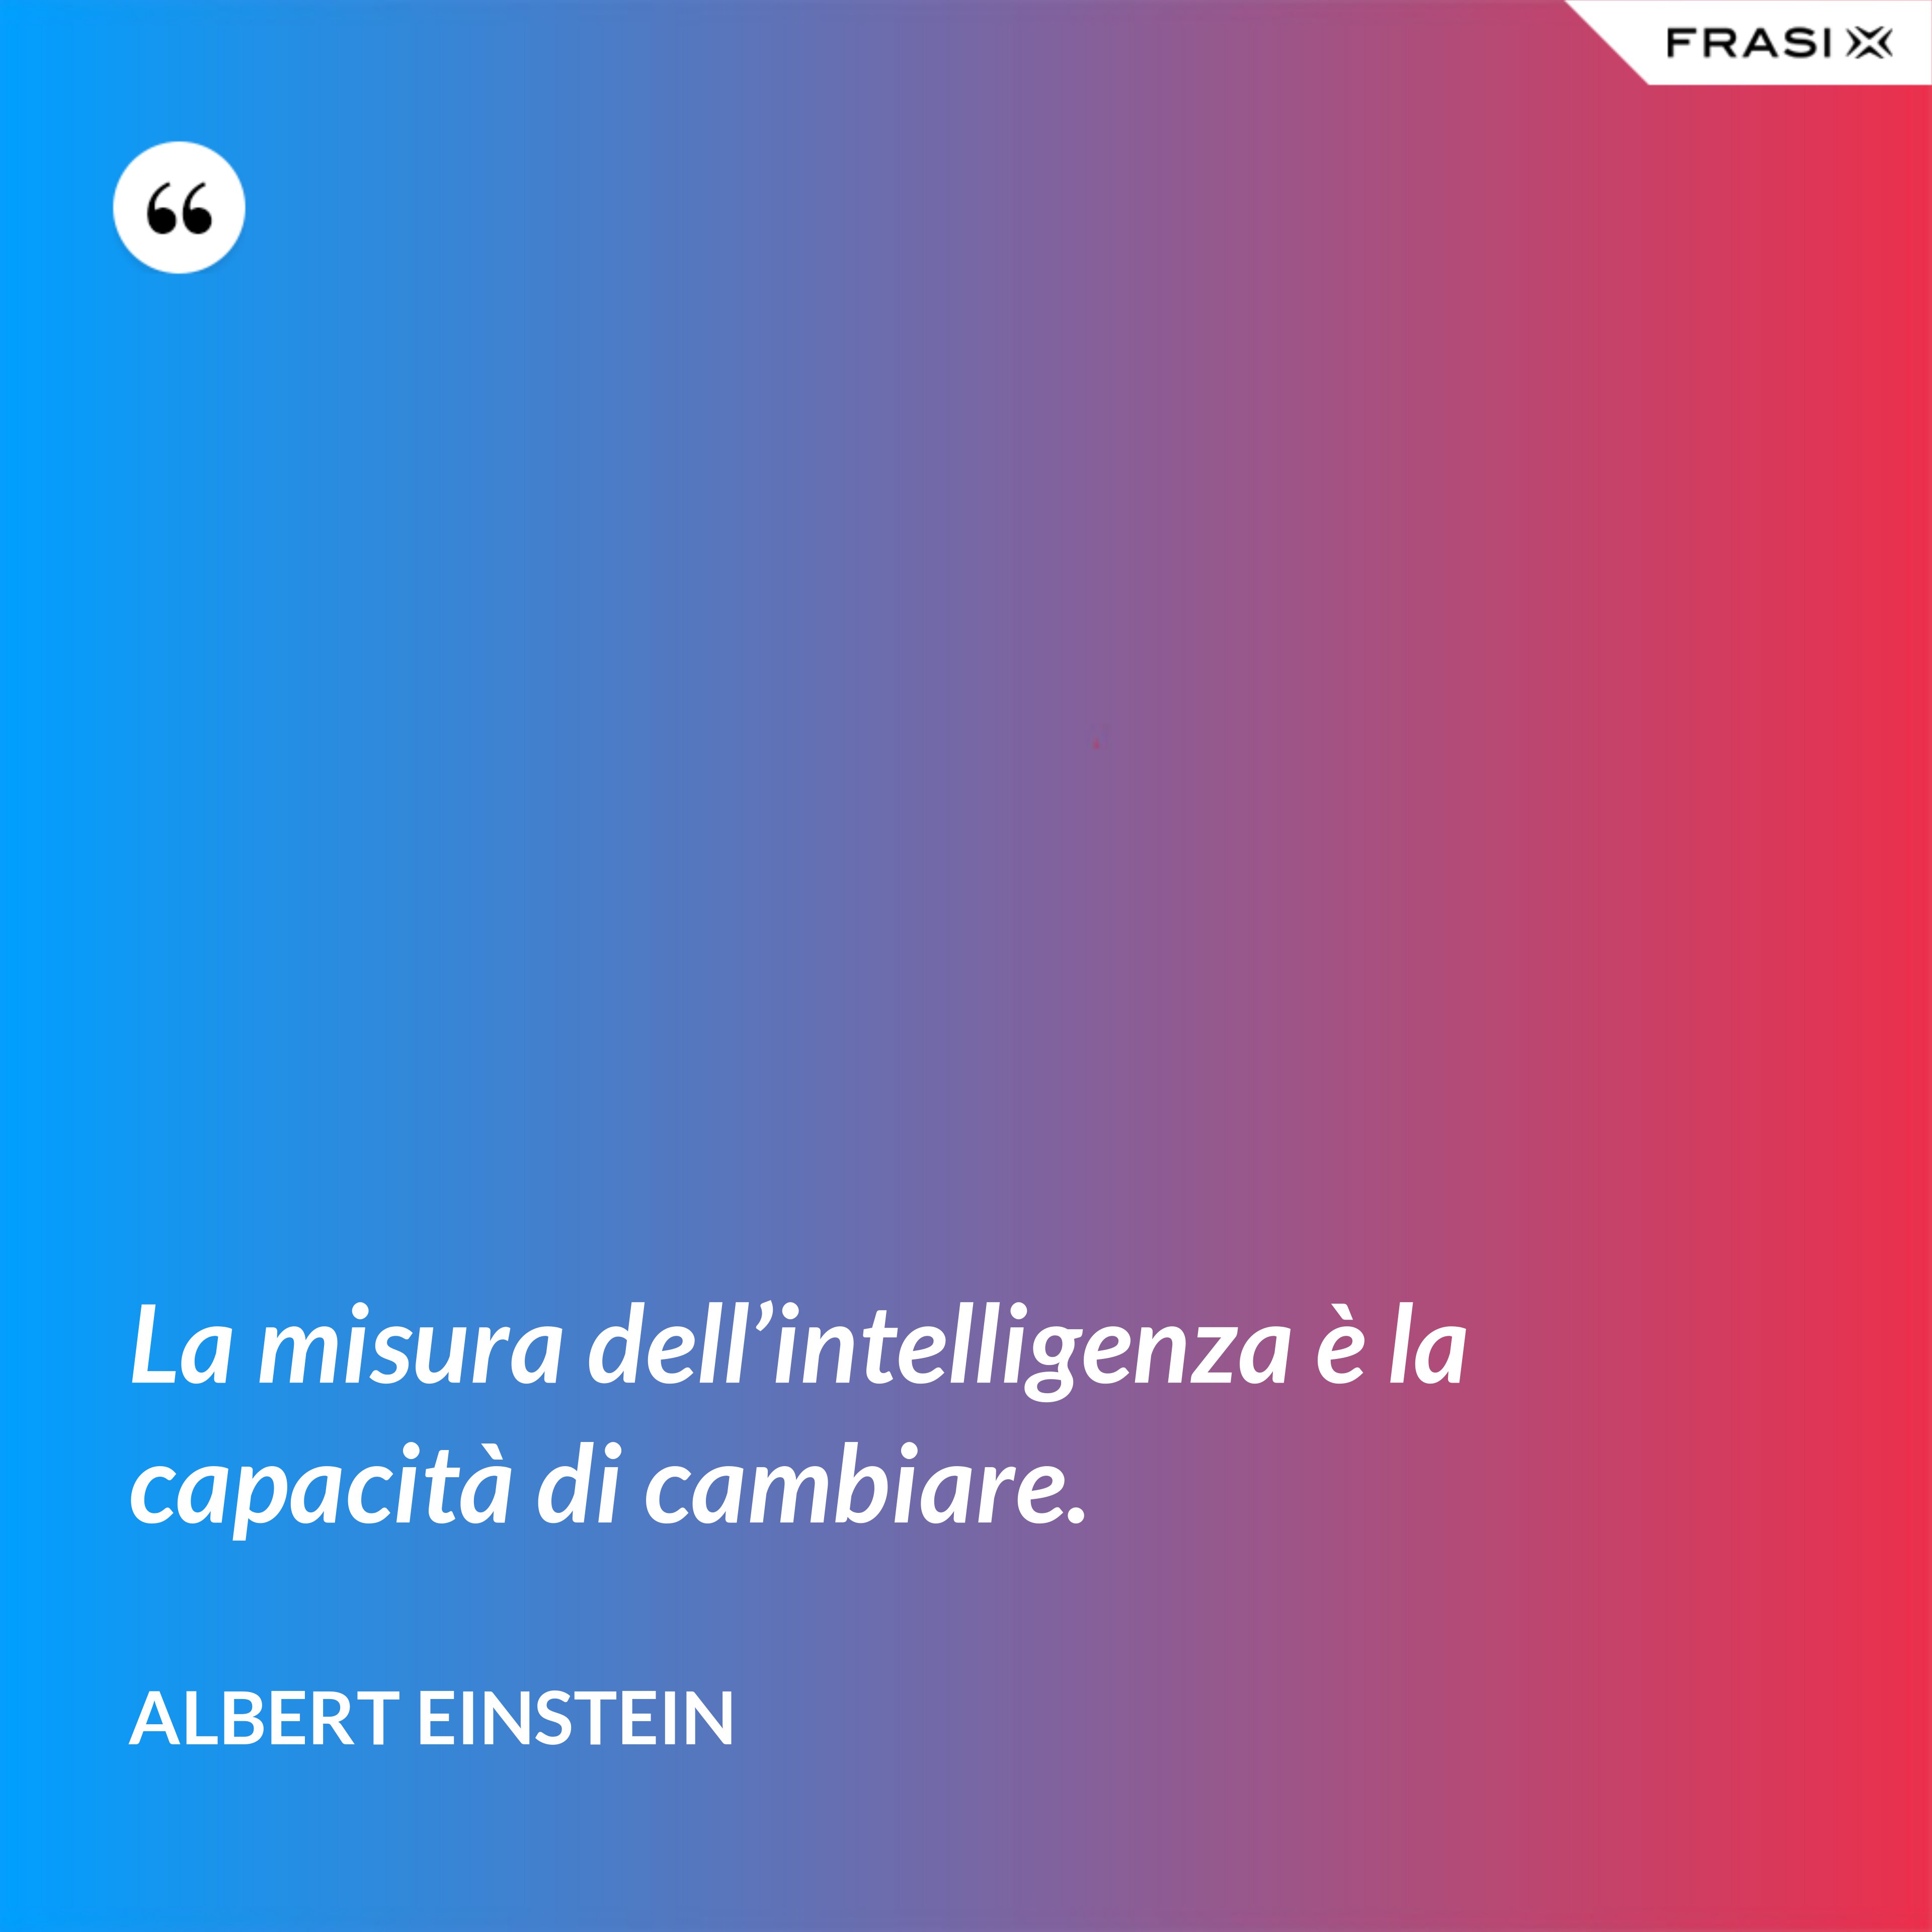 La misura dell’intelligenza è la capacità di cambiare. - Albert Einstein